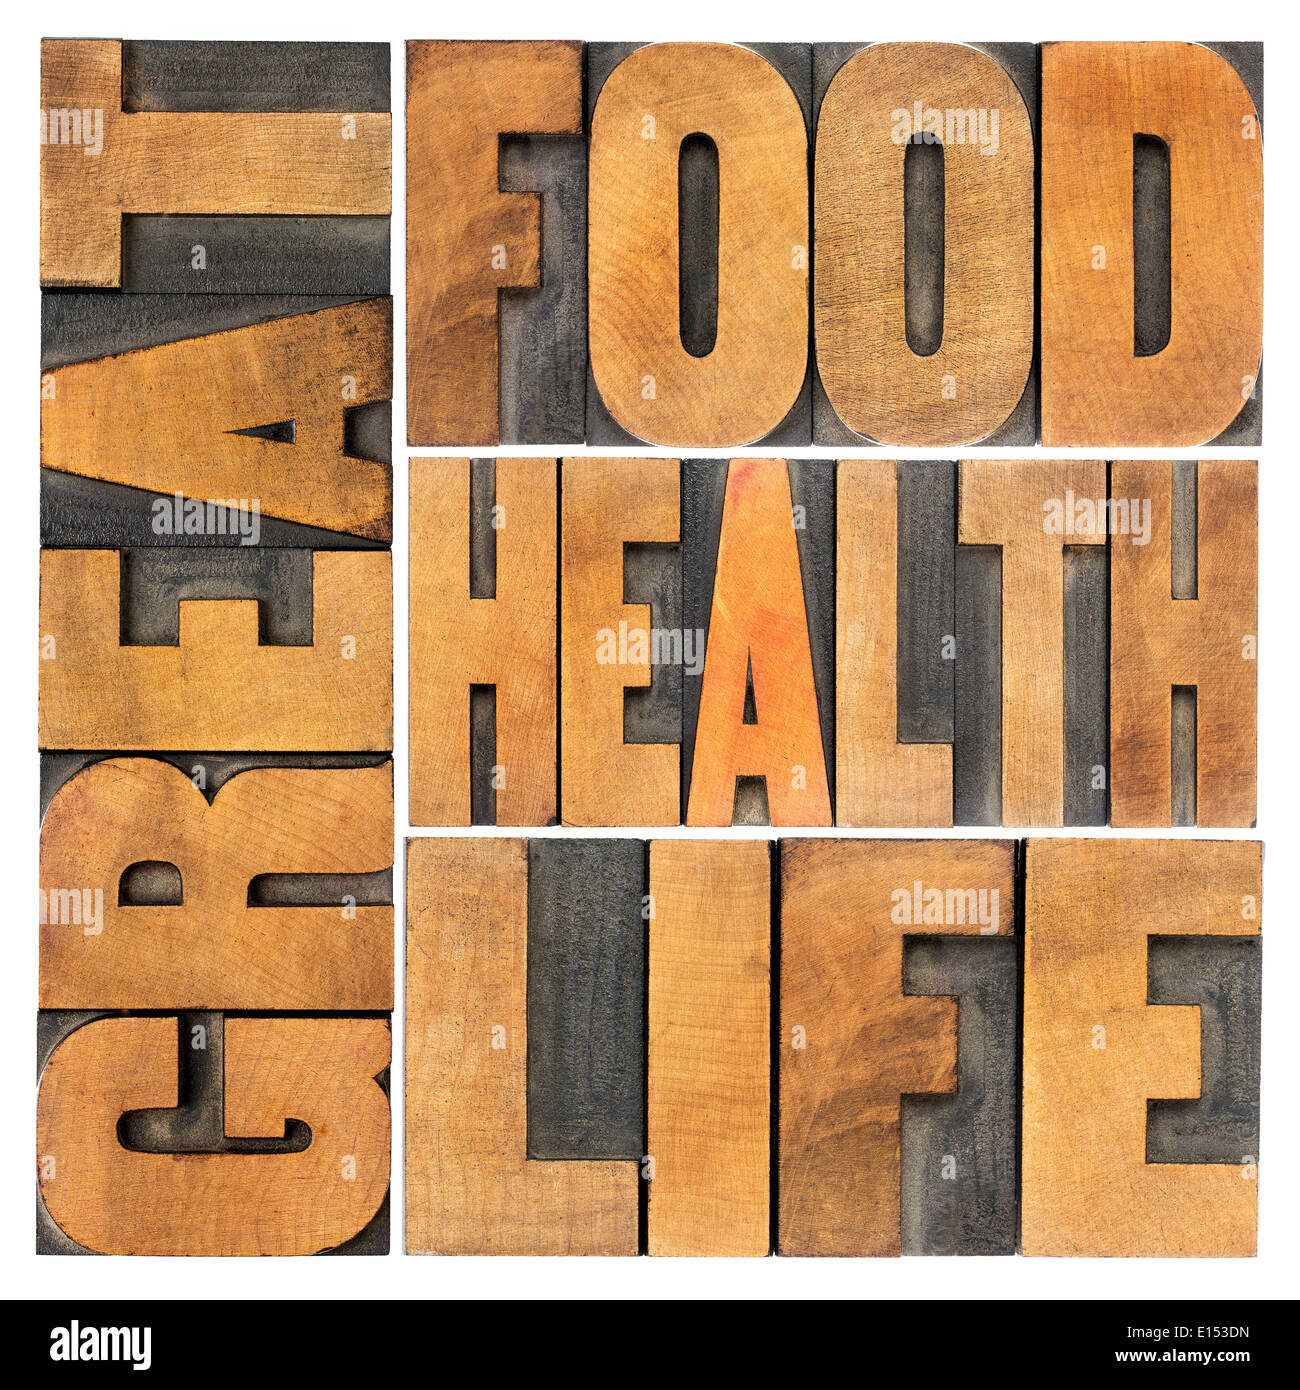 tolles Essen, Gesundheit und Leben - gesunde Ernährung und Lebensstil-Konzept - isoliert Wort abstrakt im Buchdruck Holzart Stockfoto